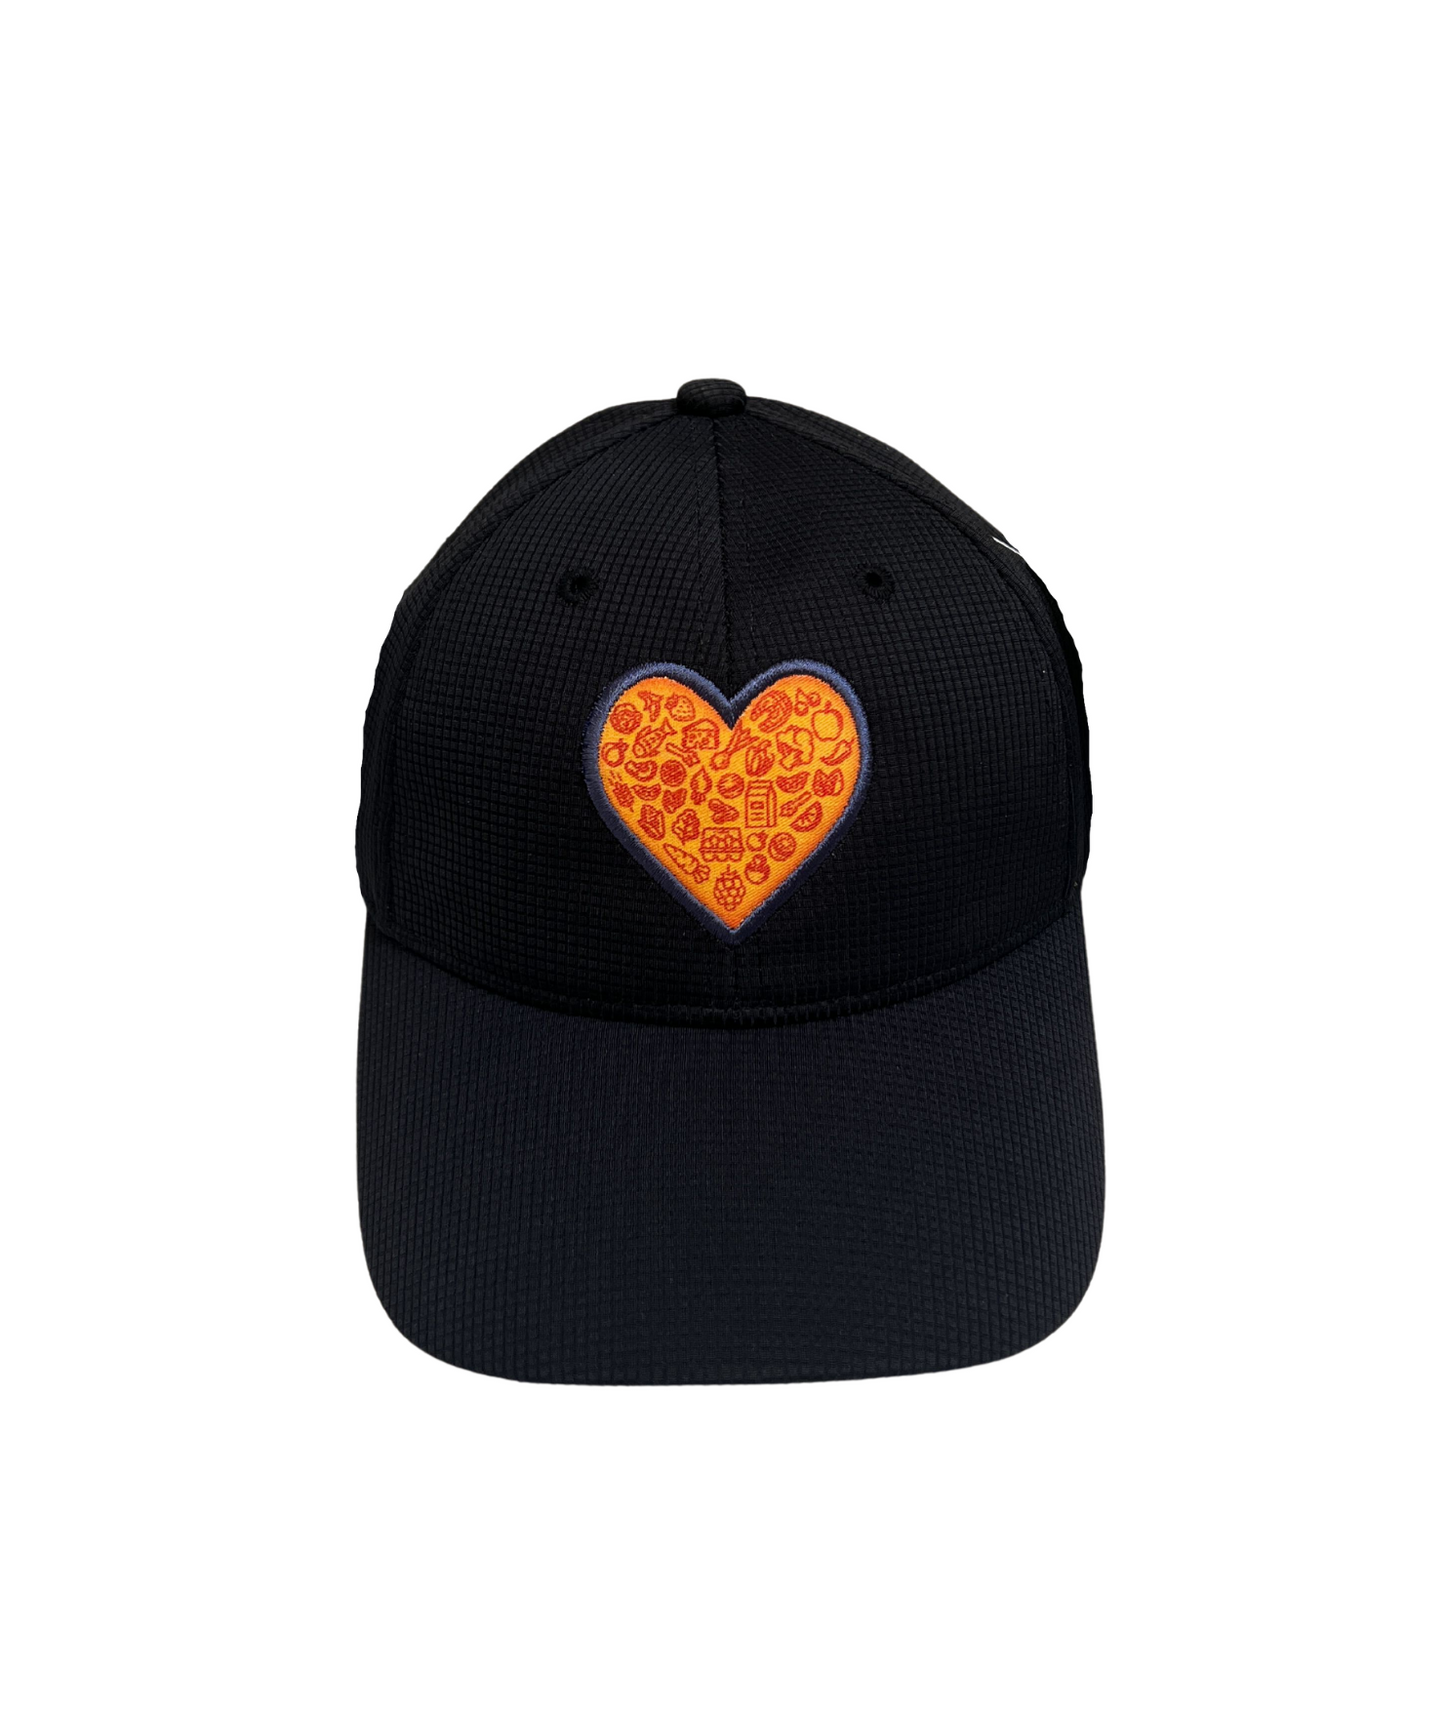 Heart Baseball Cap